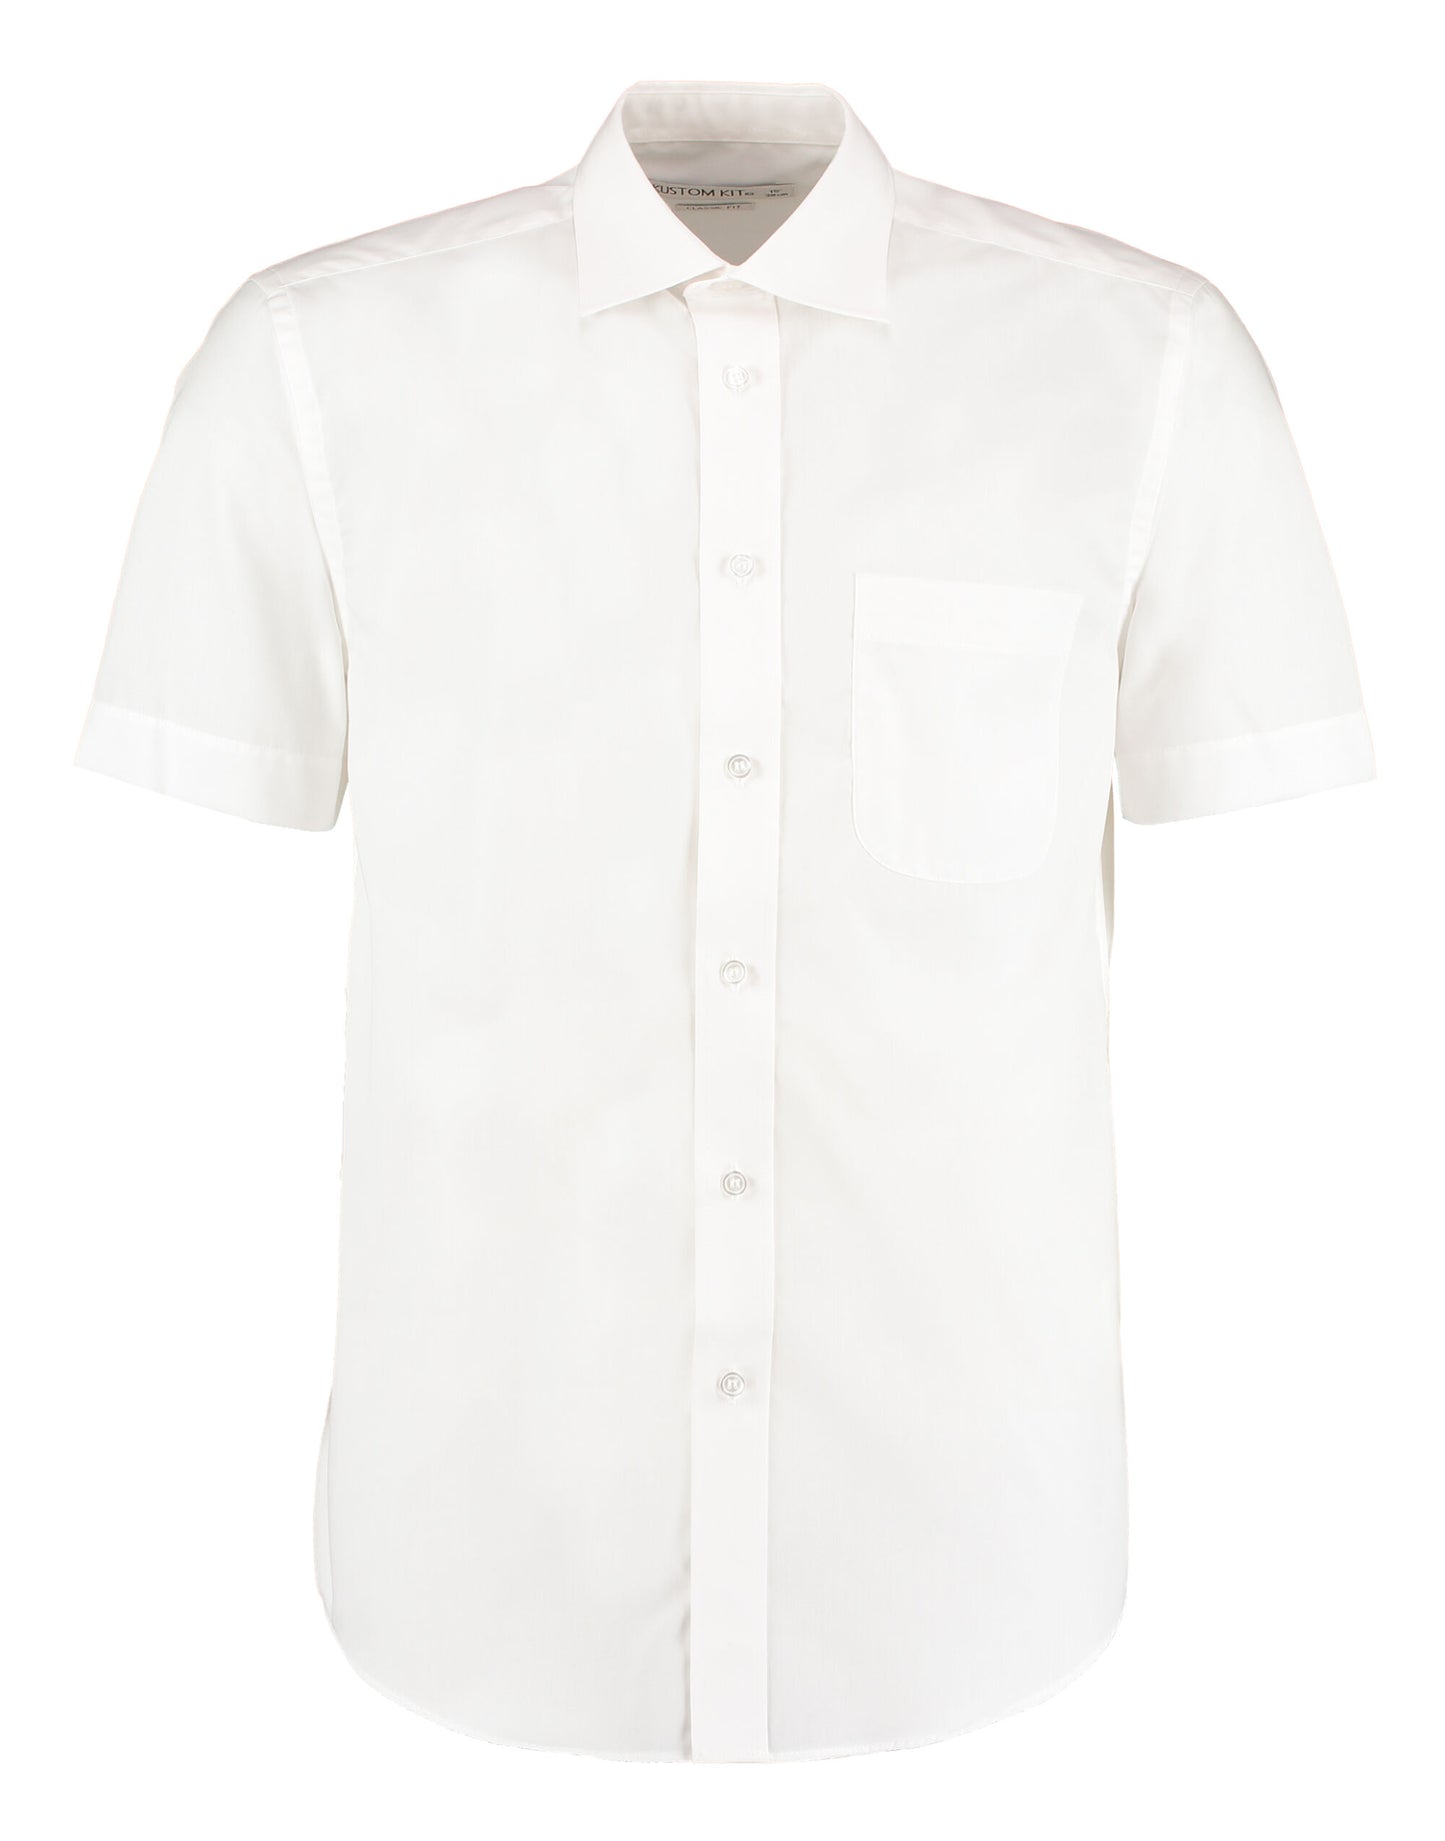 KK102 Kustom Kit Business Shirt Short Sleeve